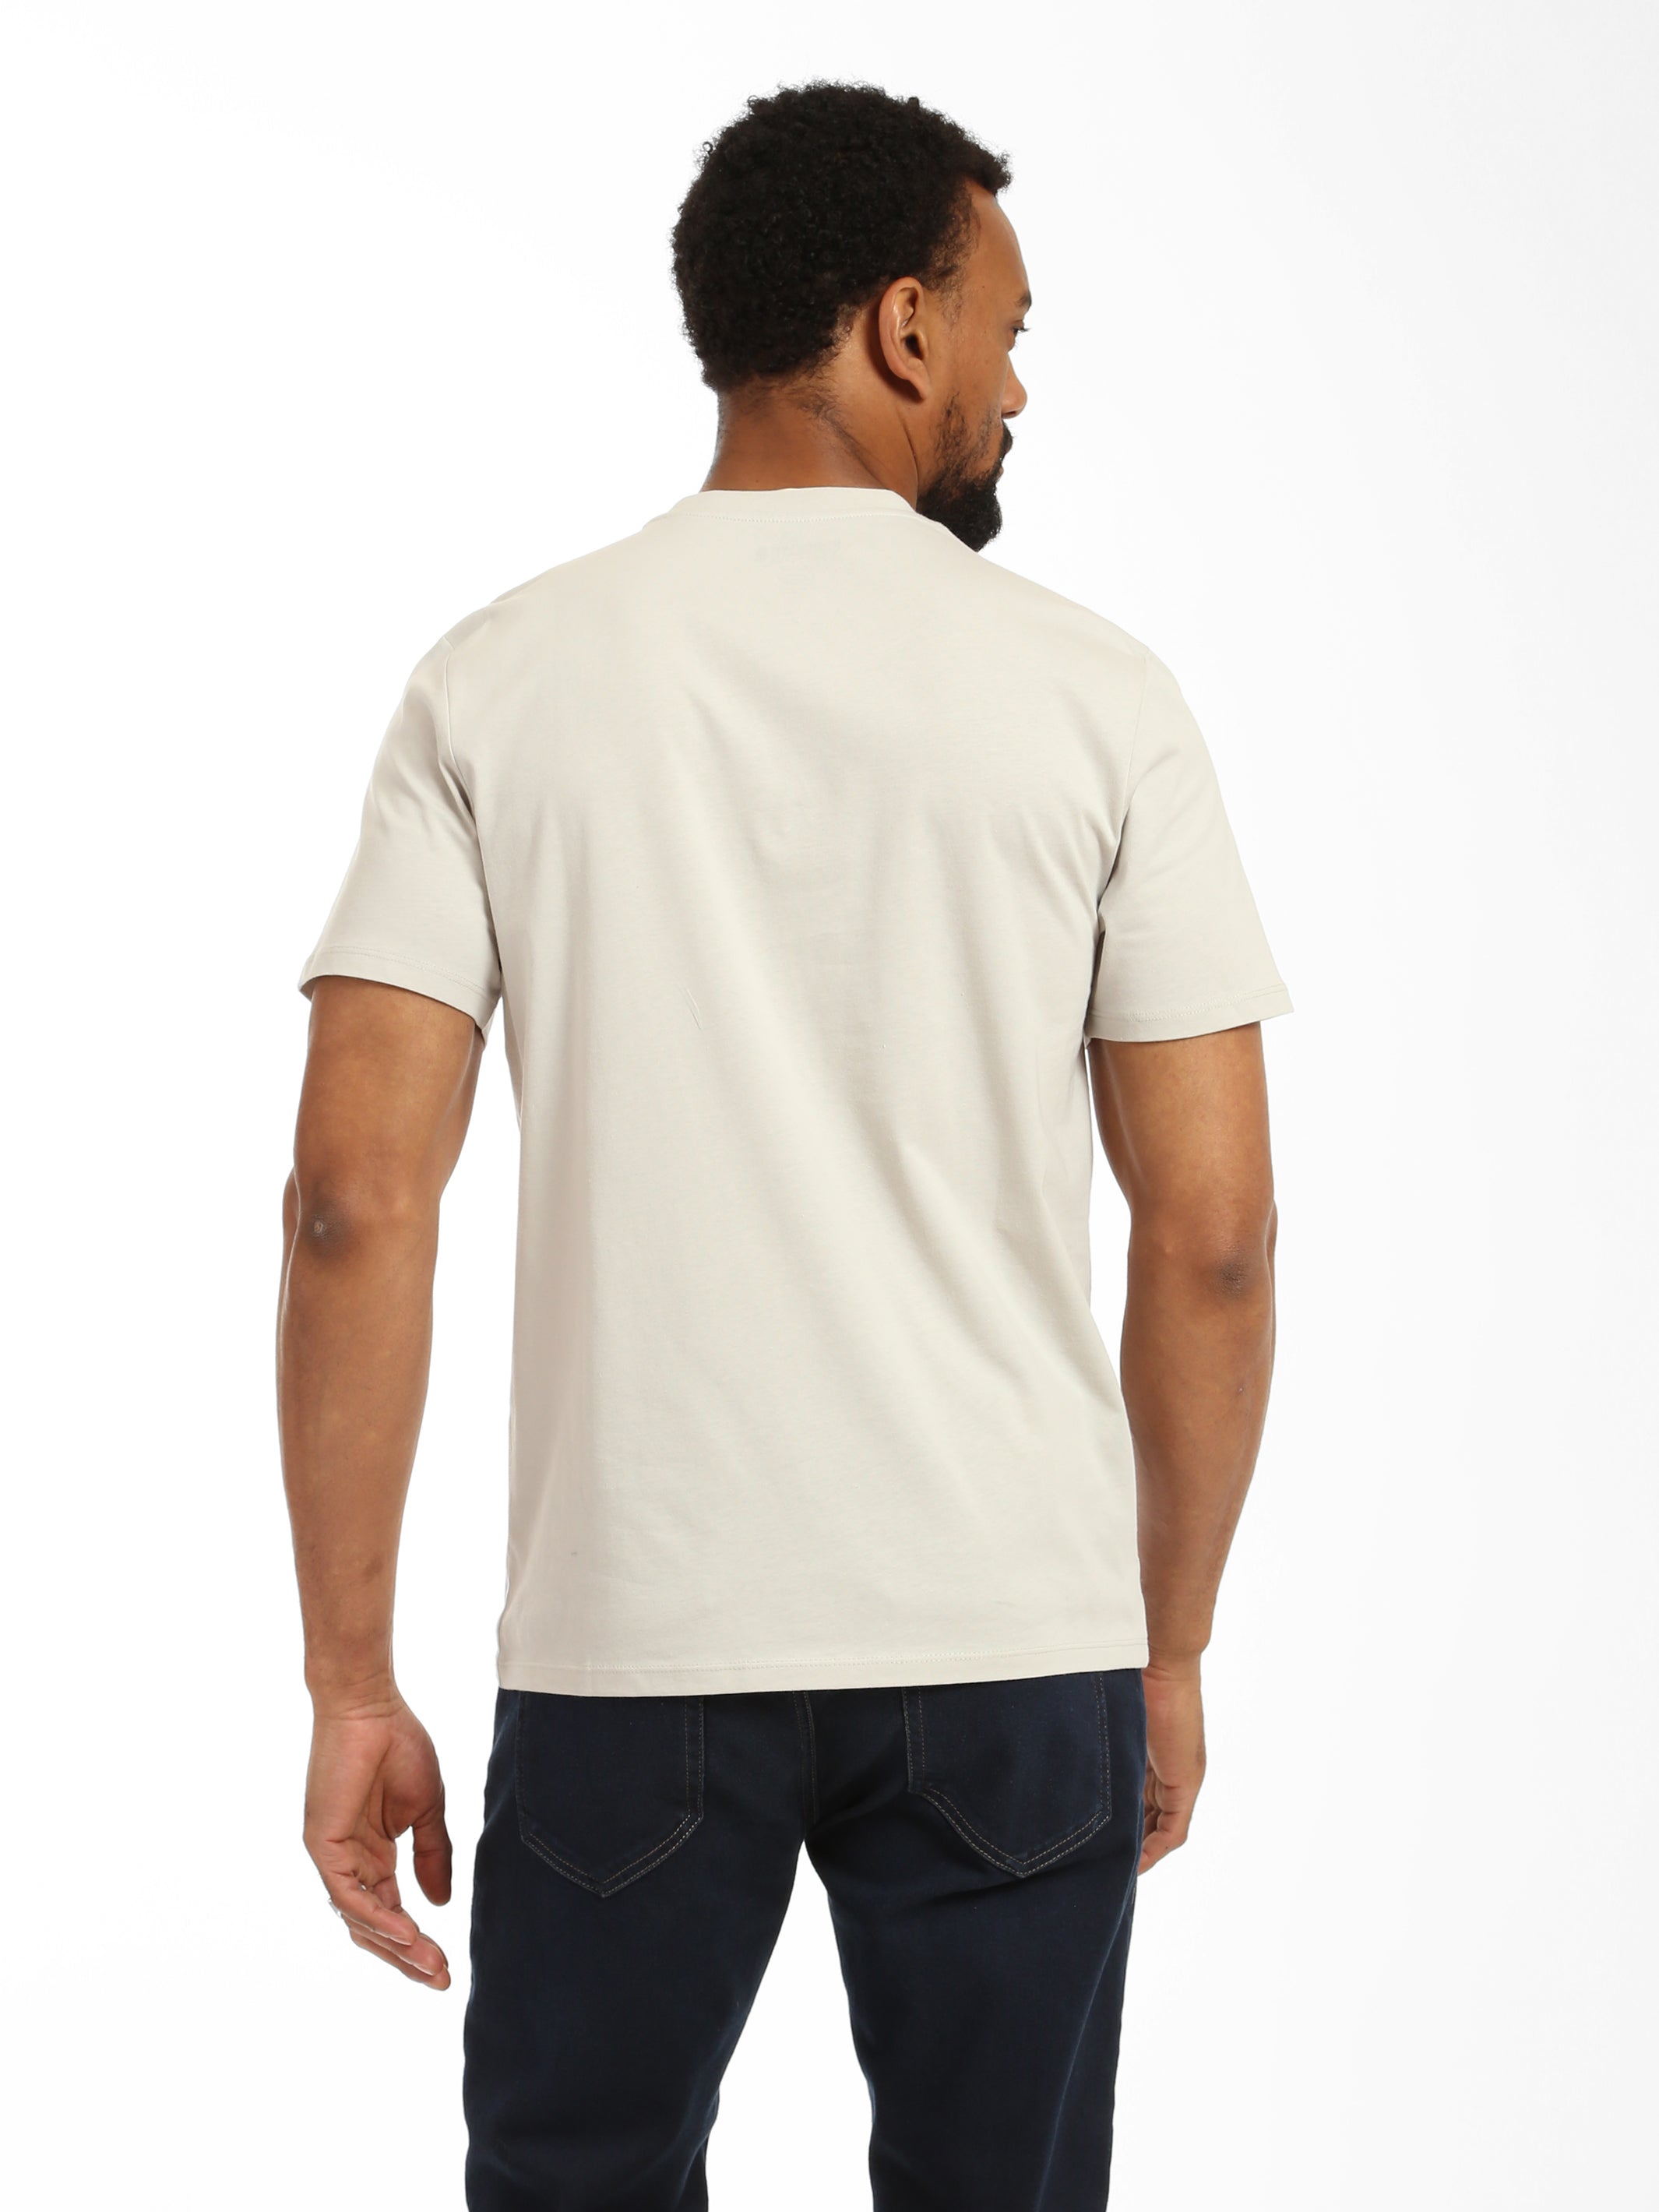 Men's Record T-shirt in Luna Rock - BROOKLYN INDUSTRIES